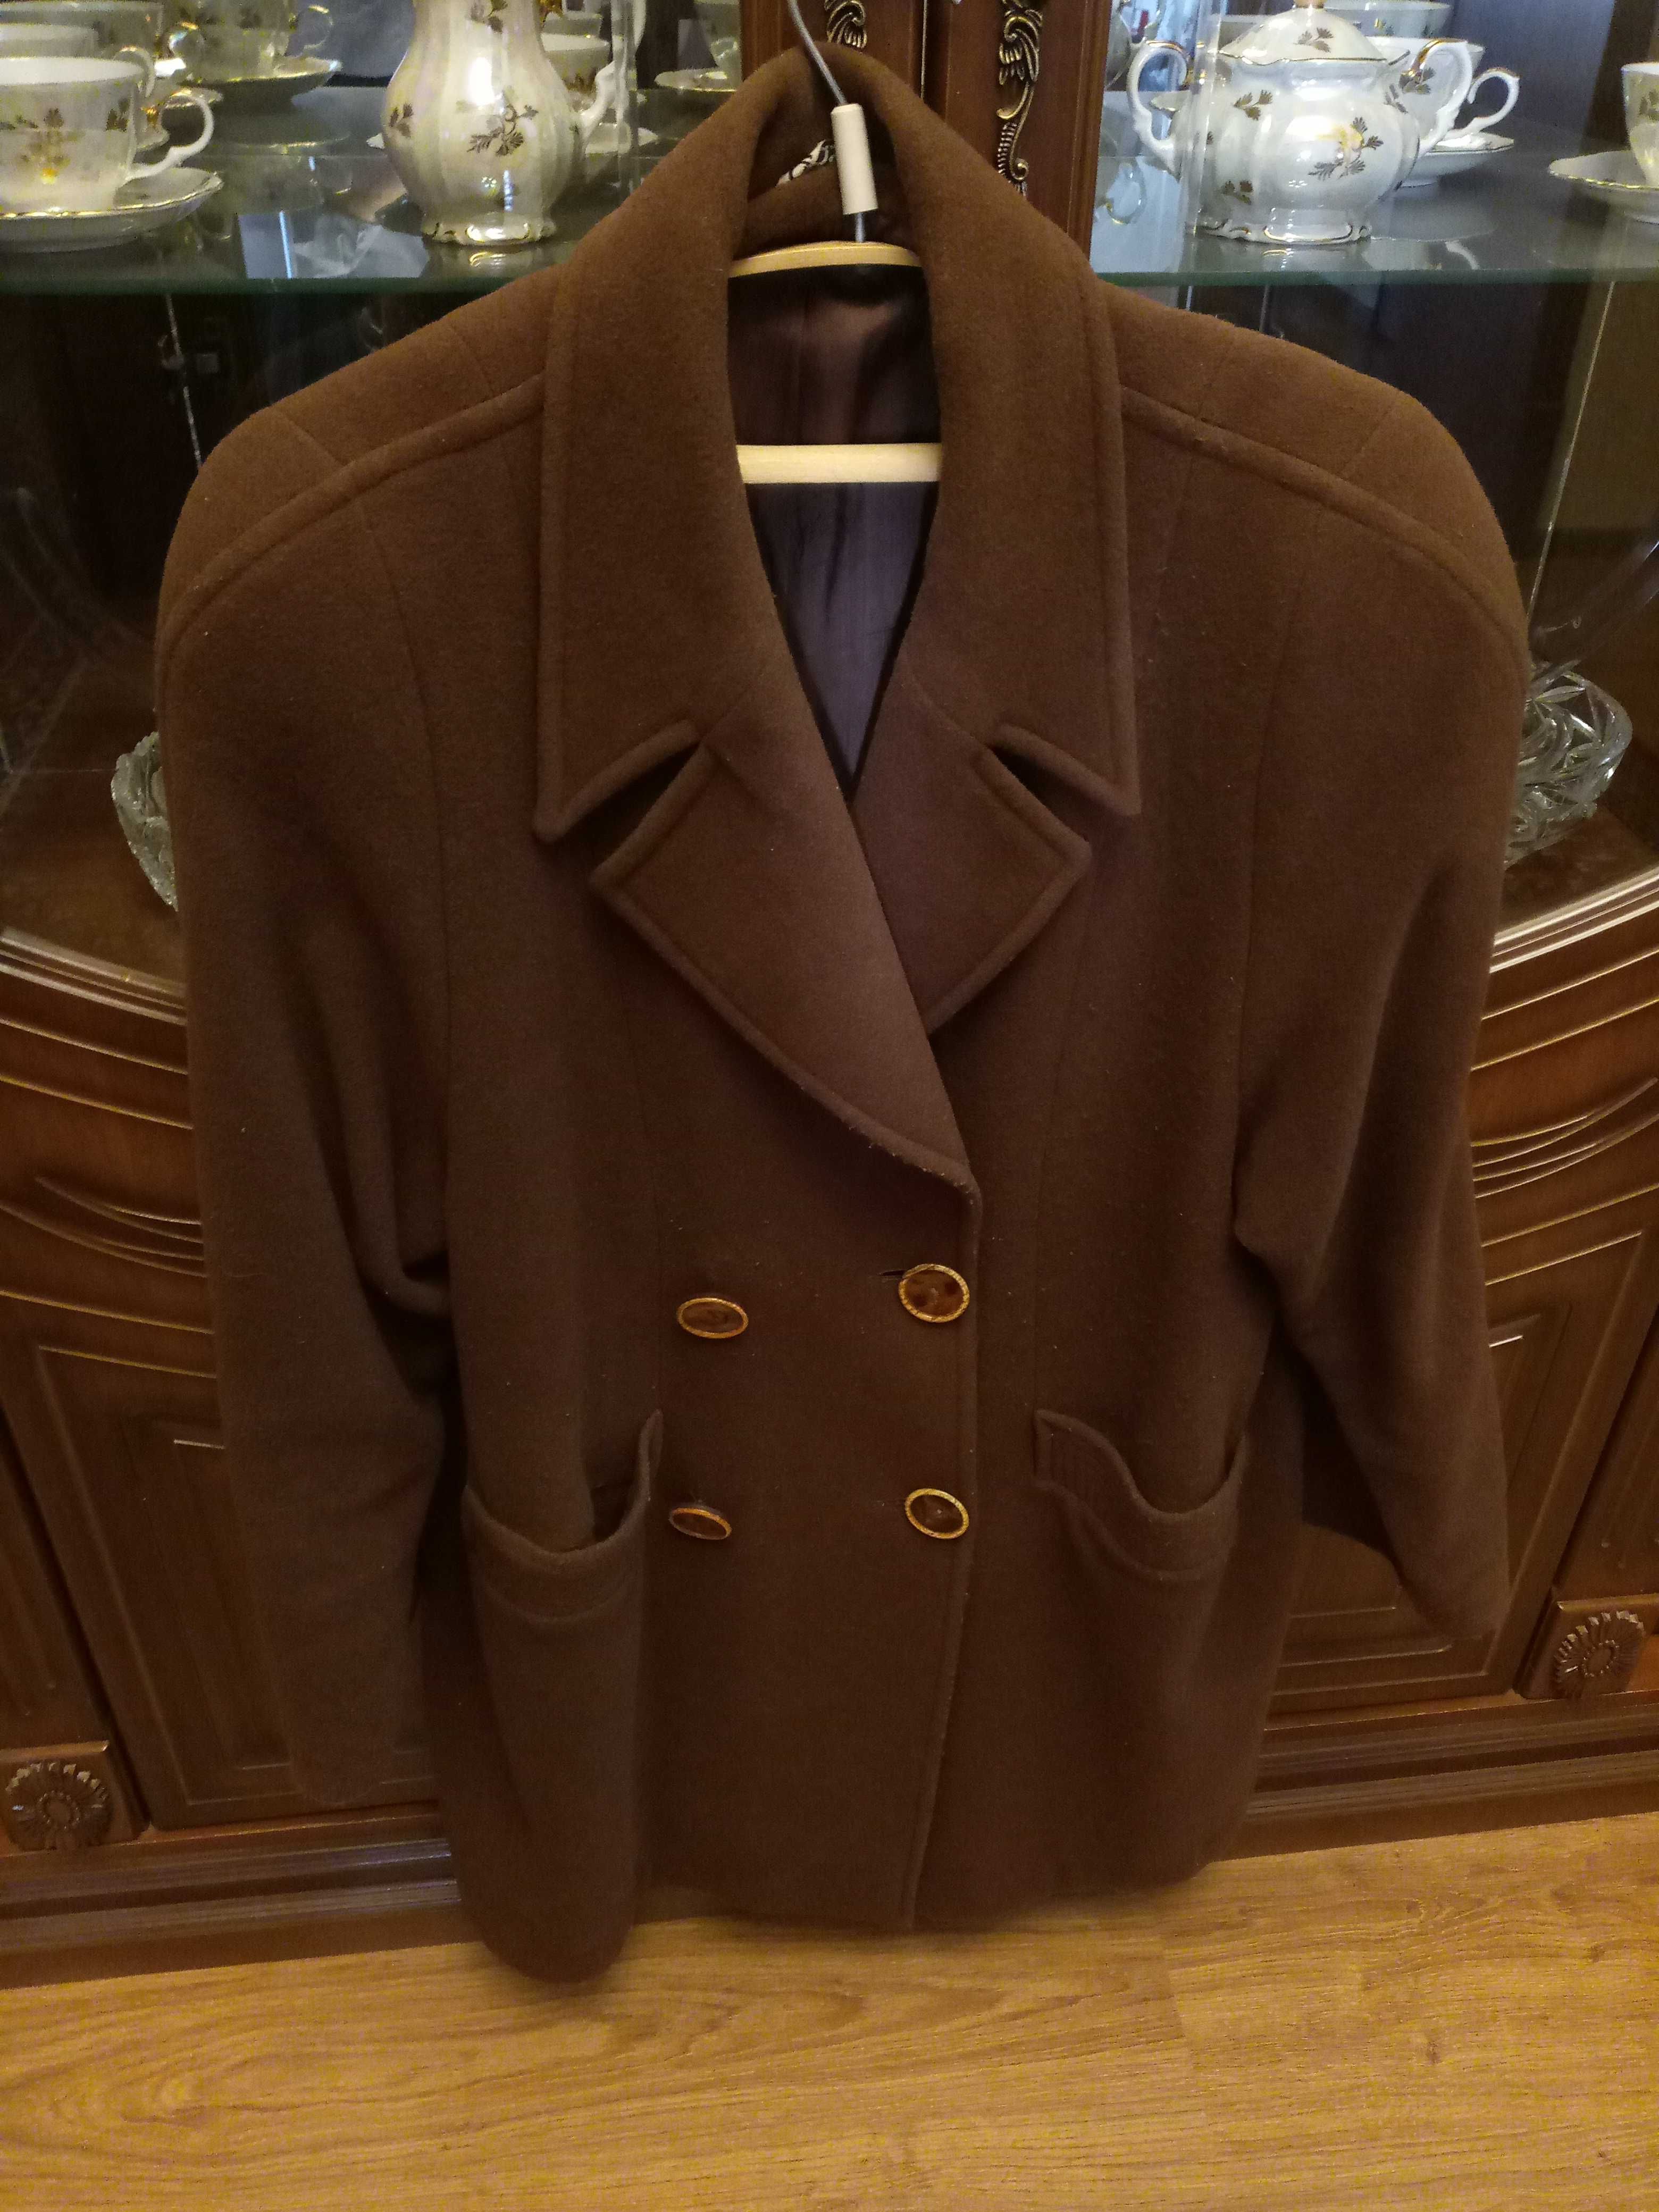 Теплое пальто пиджак(кашемир) пр-во Турция.Размер 50-52